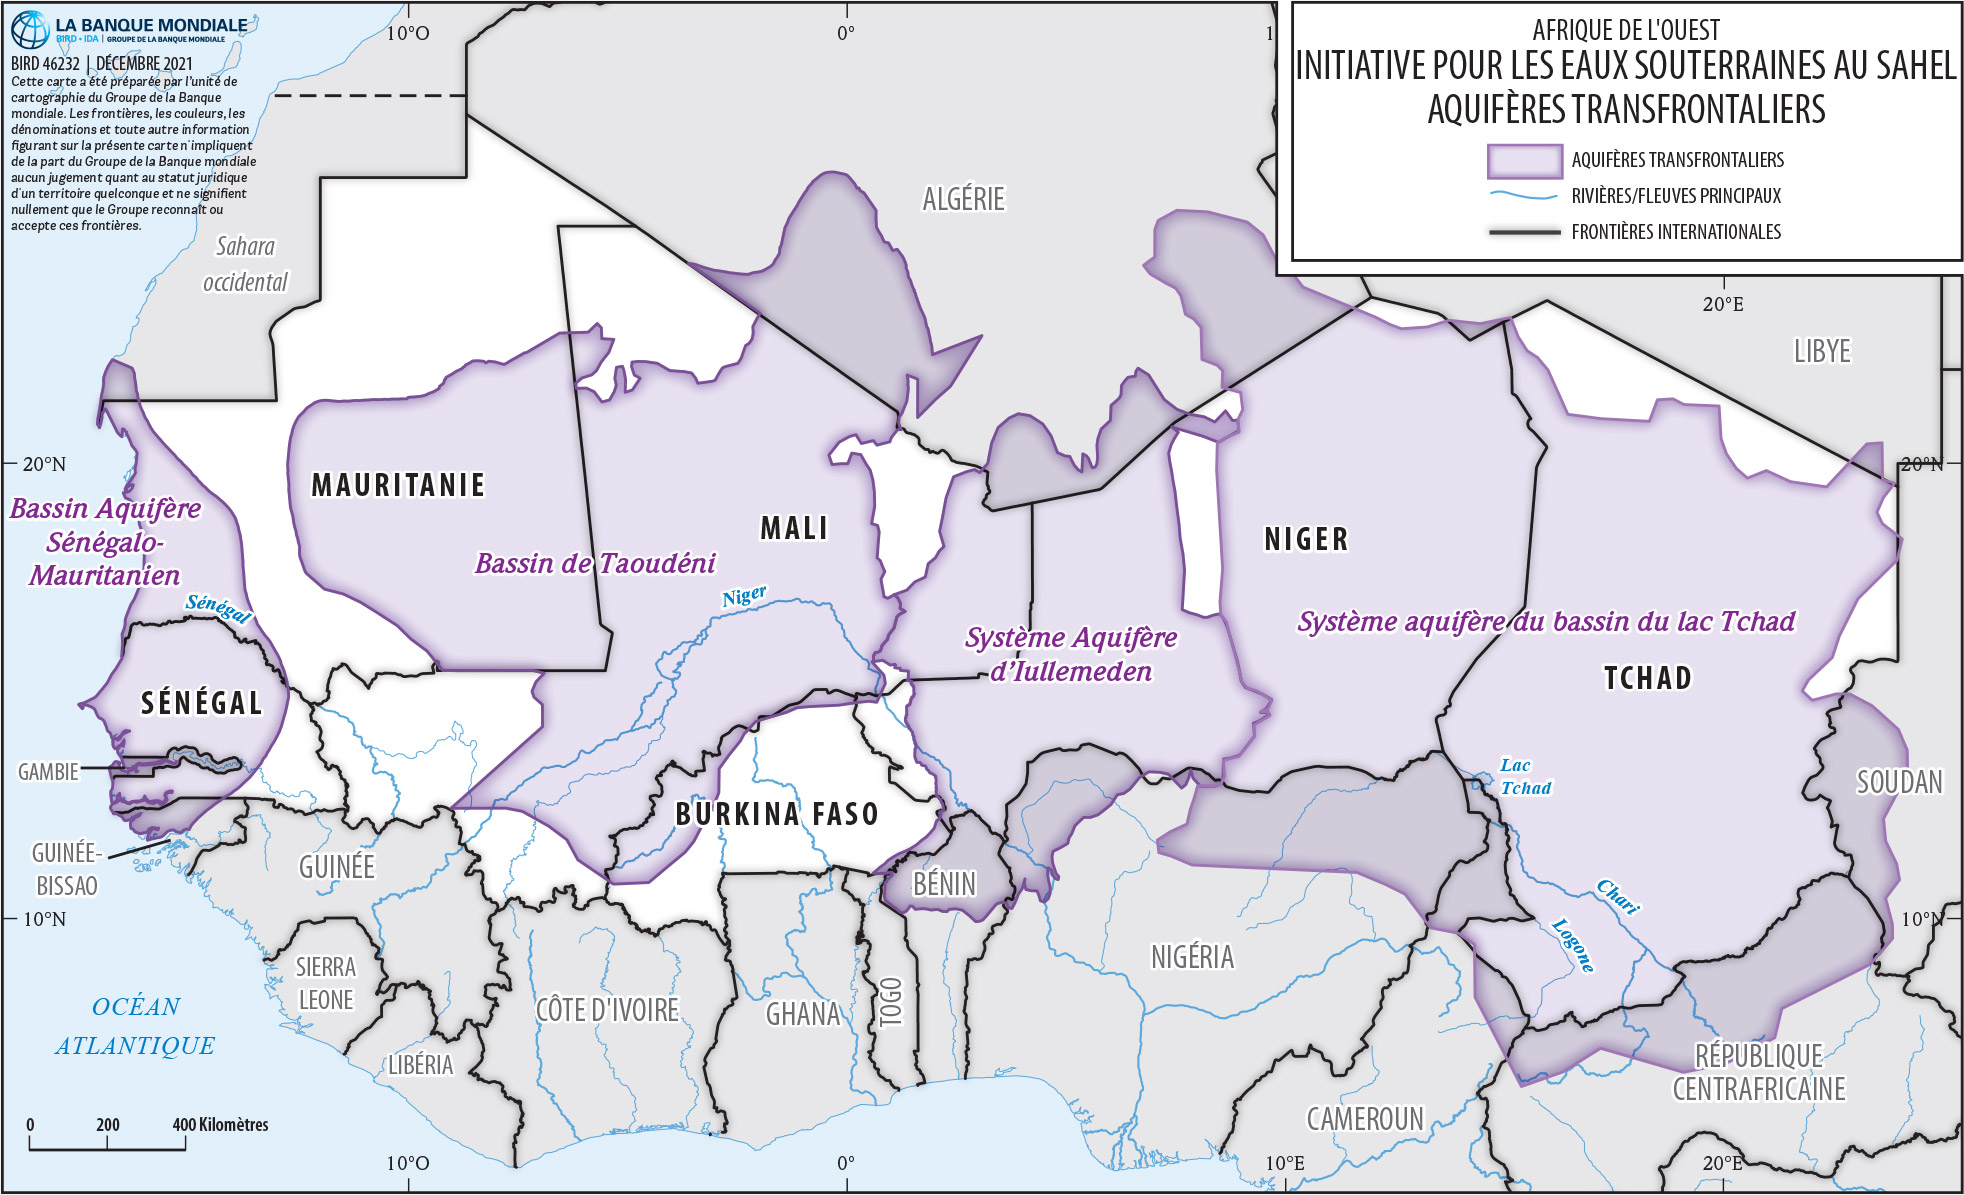 Carte des aquifères transfrontaliers de la région du Sahel. Crédits carte : Banque mondiale/Service de cartographie